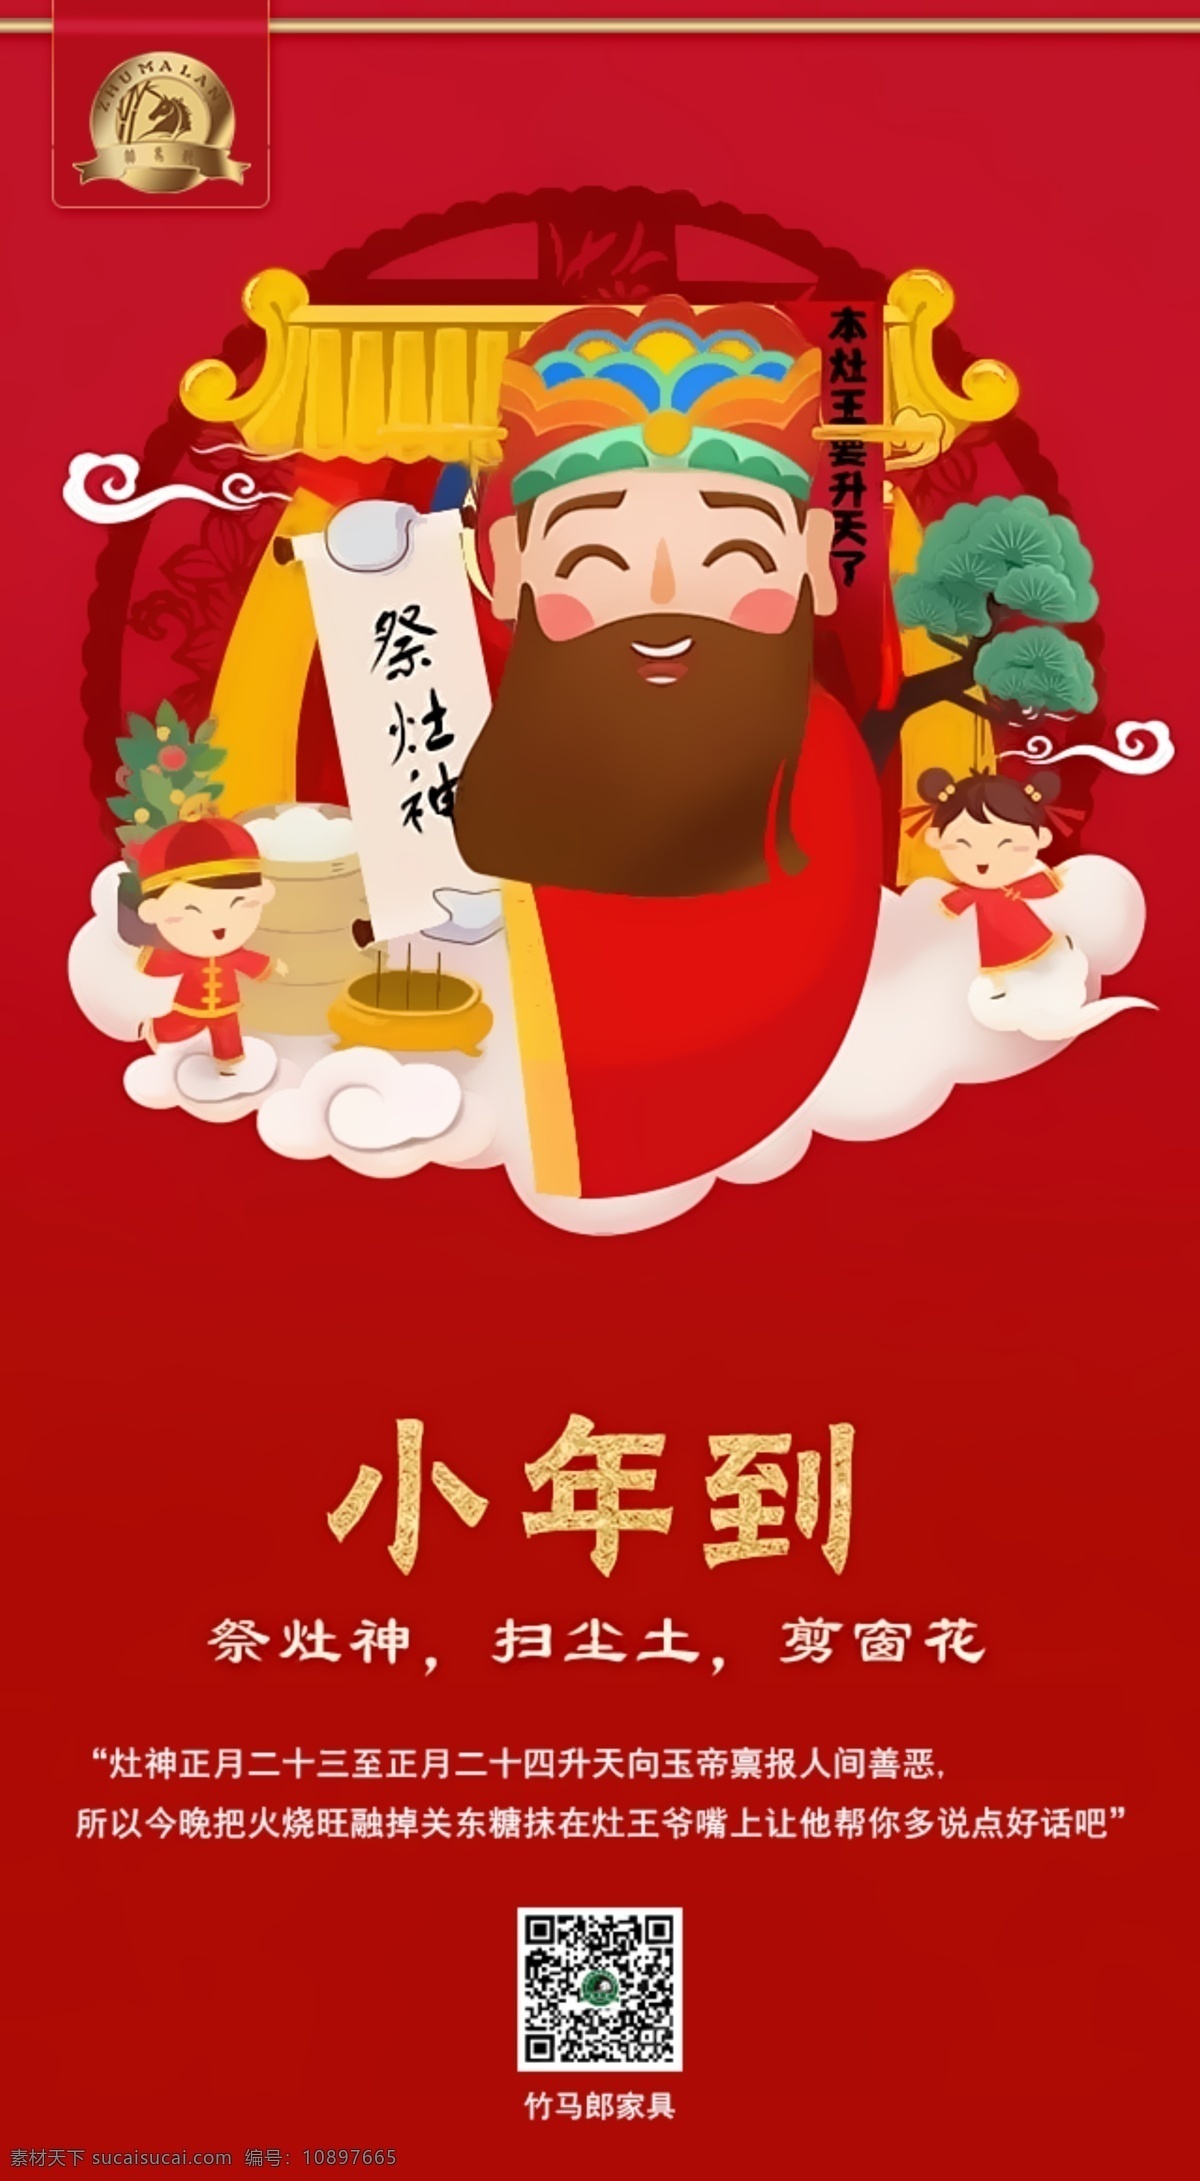 小年夜 小年海报 传统节日 红色 中国风 淘宝界面设计 淘宝 广告 banner